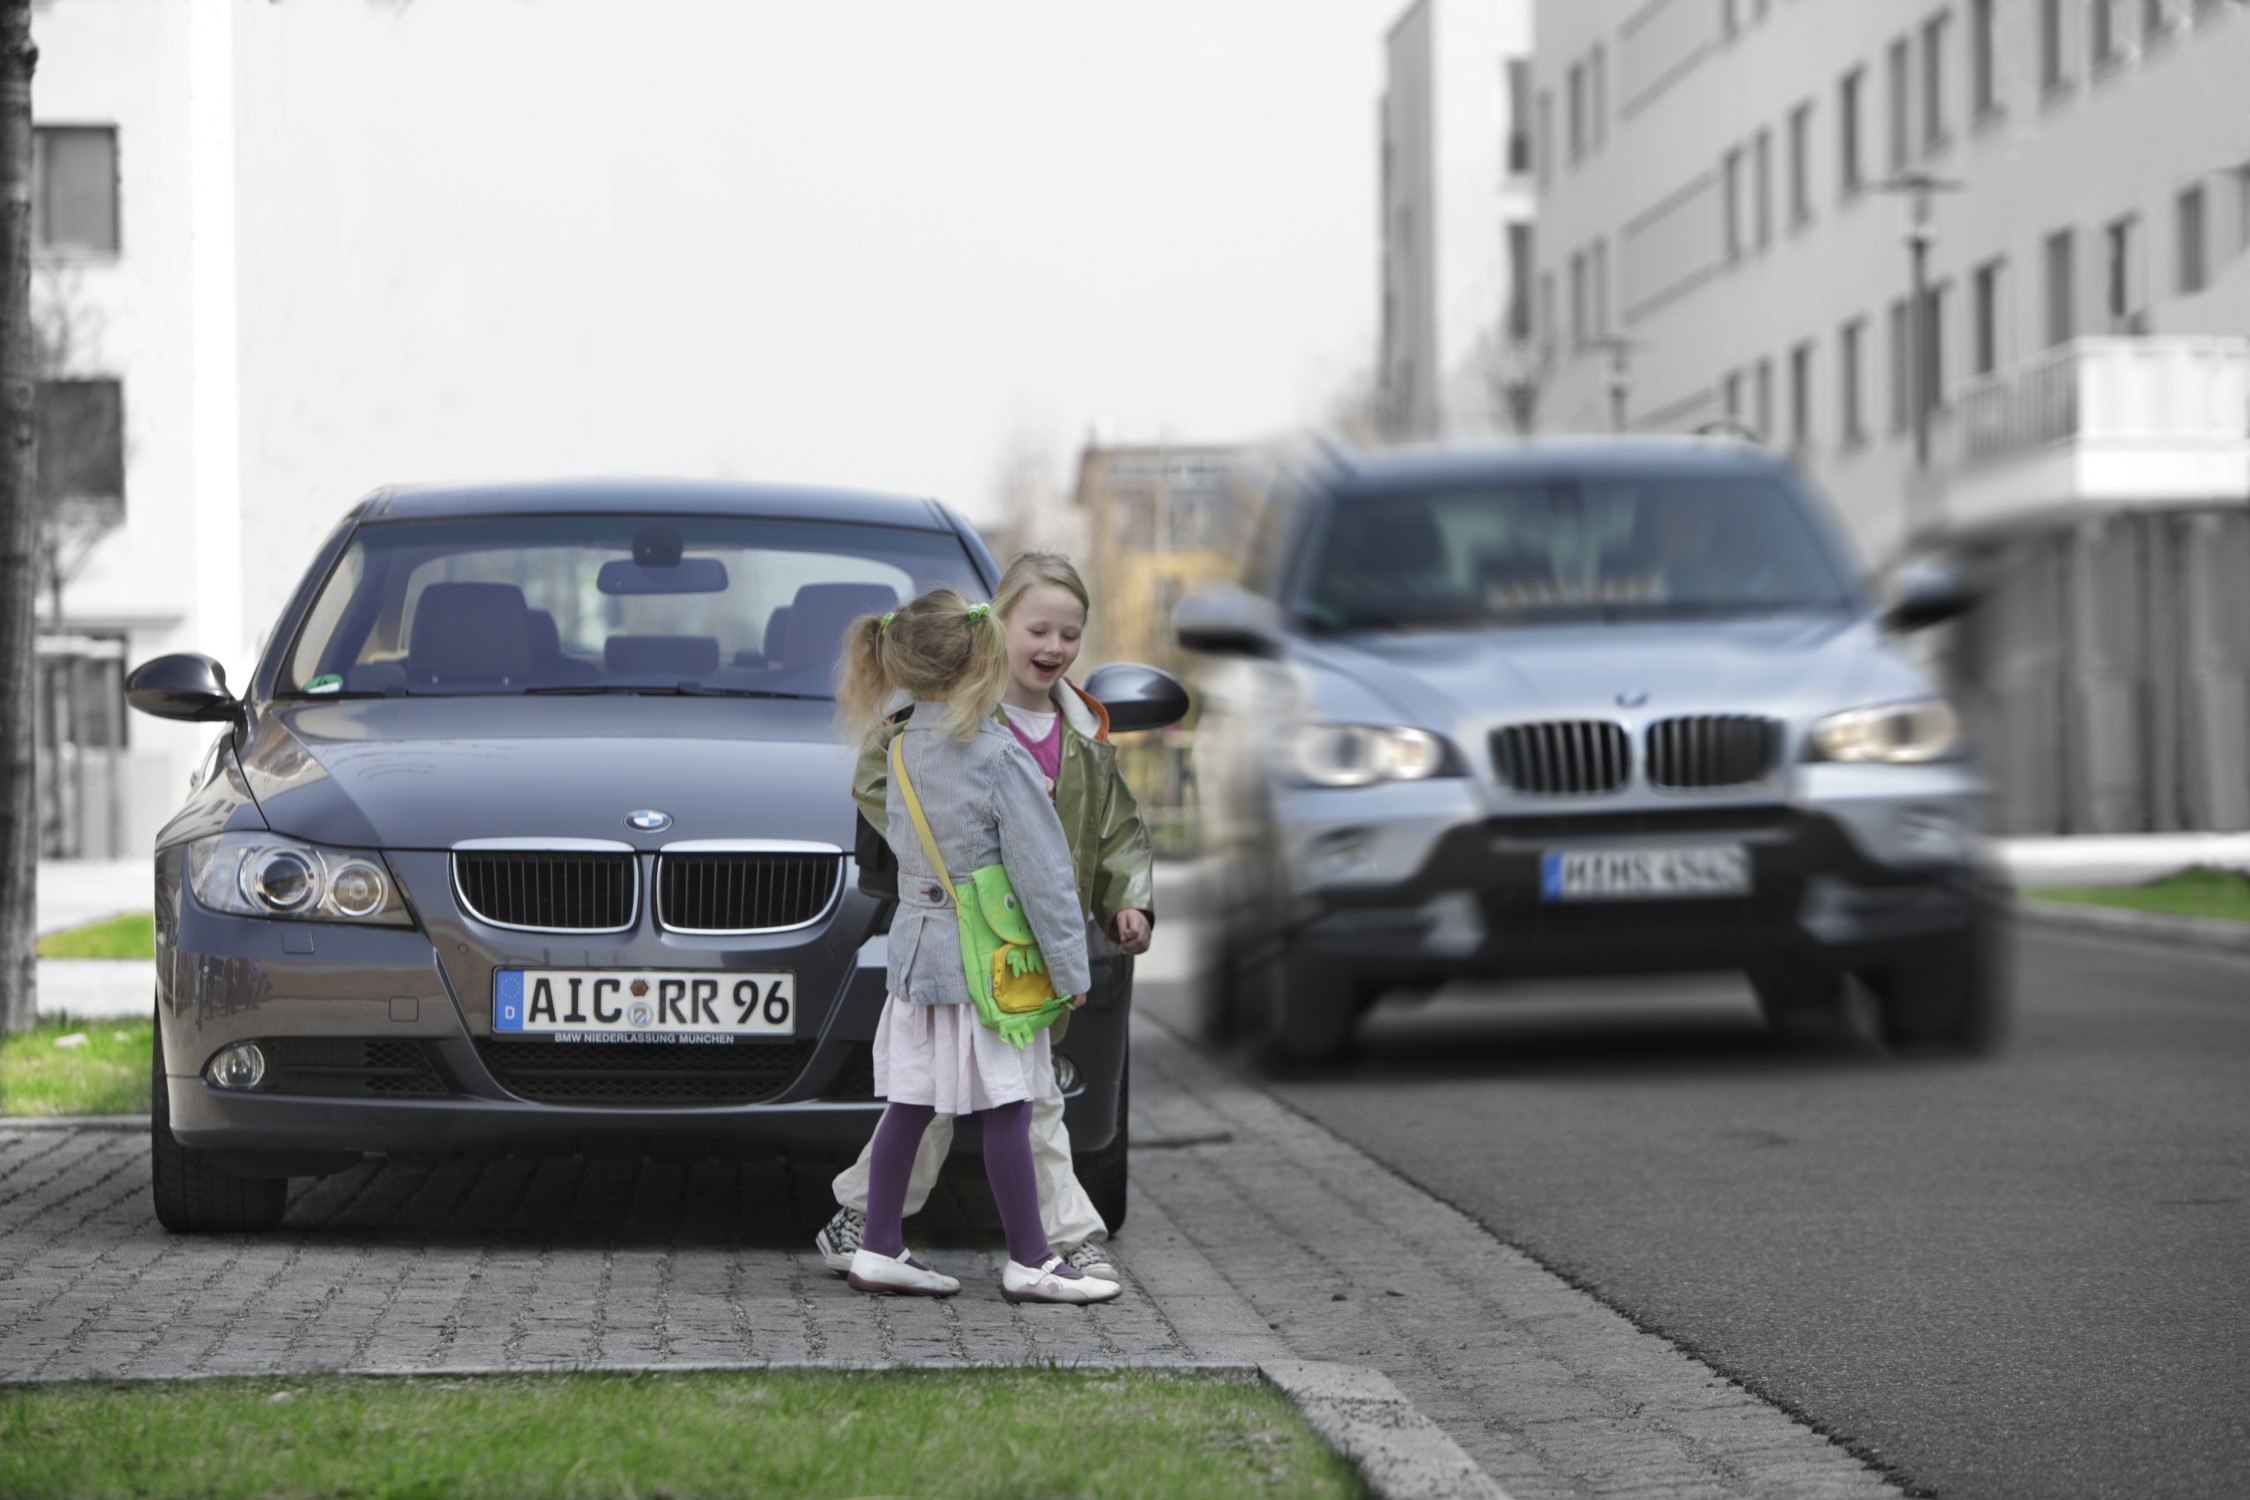 Едем уважать. Дети возле автомобиля. Пешеход и автомобиль. Машина едет на пешехода. Ребенок выбежал на дорогу.